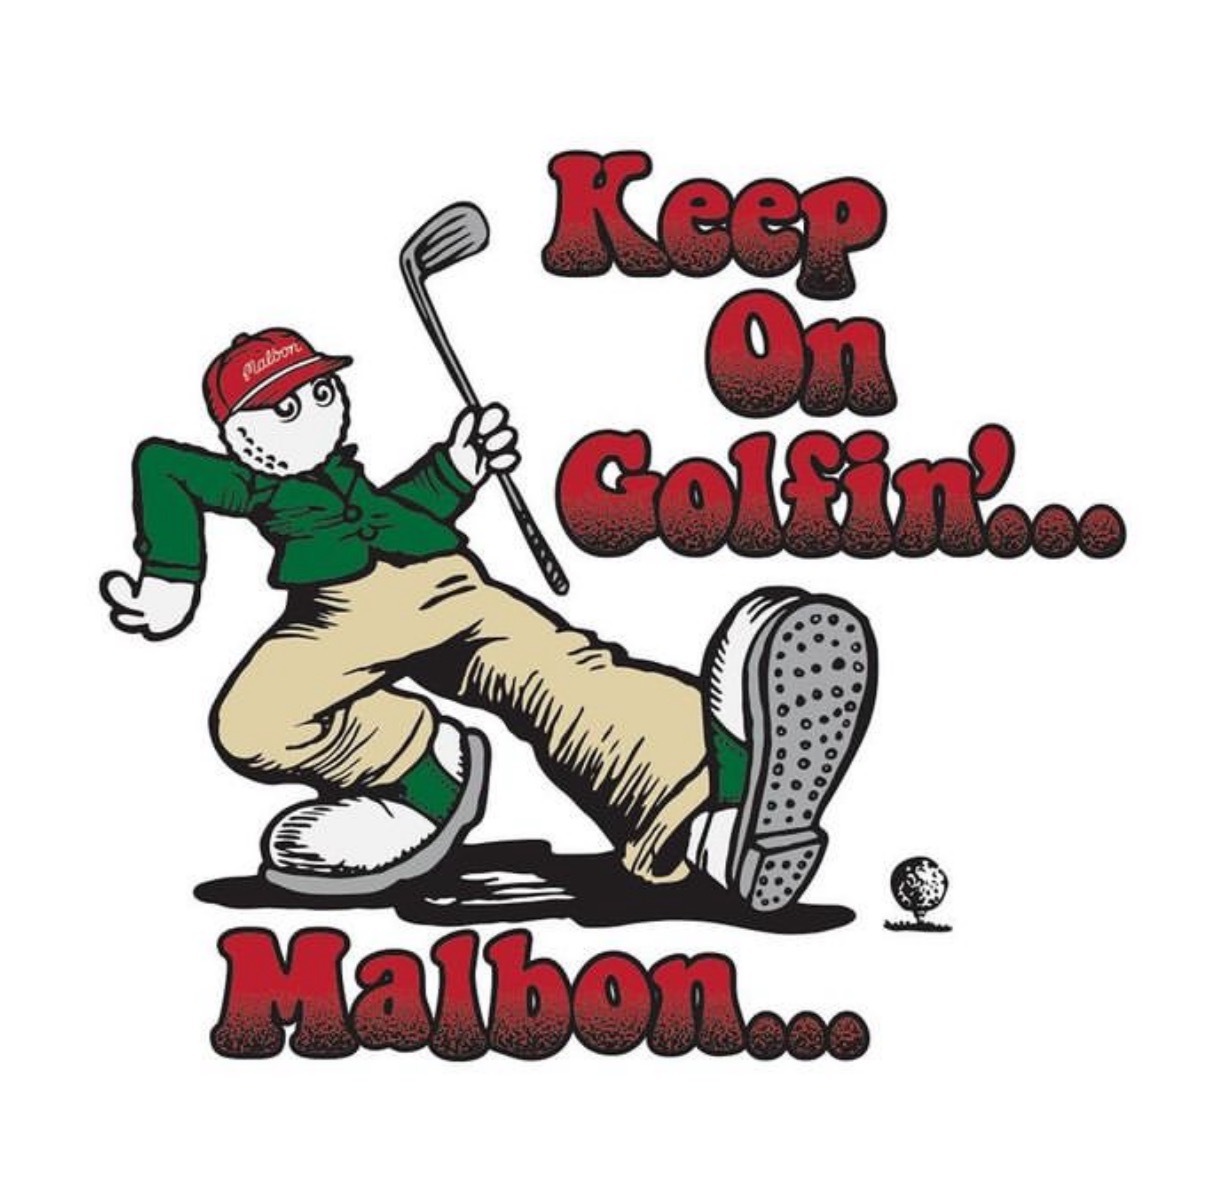 高爾夫球知名品牌Malbon，提供舒適時髦的高爾夫球服飾